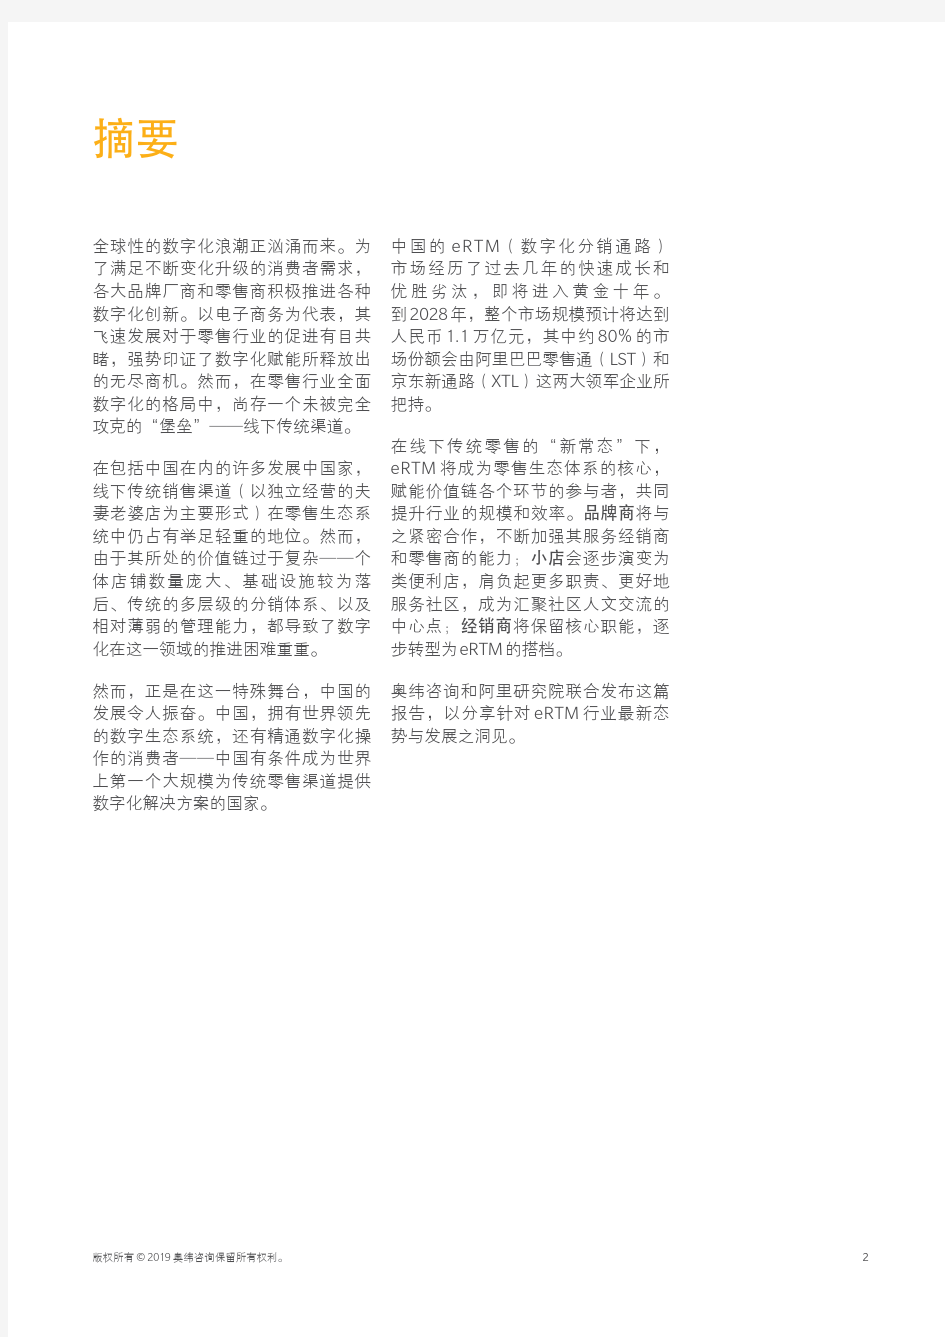 【精品报告】中国零售渠道数字化转型白皮书：攻克最后的堡垒